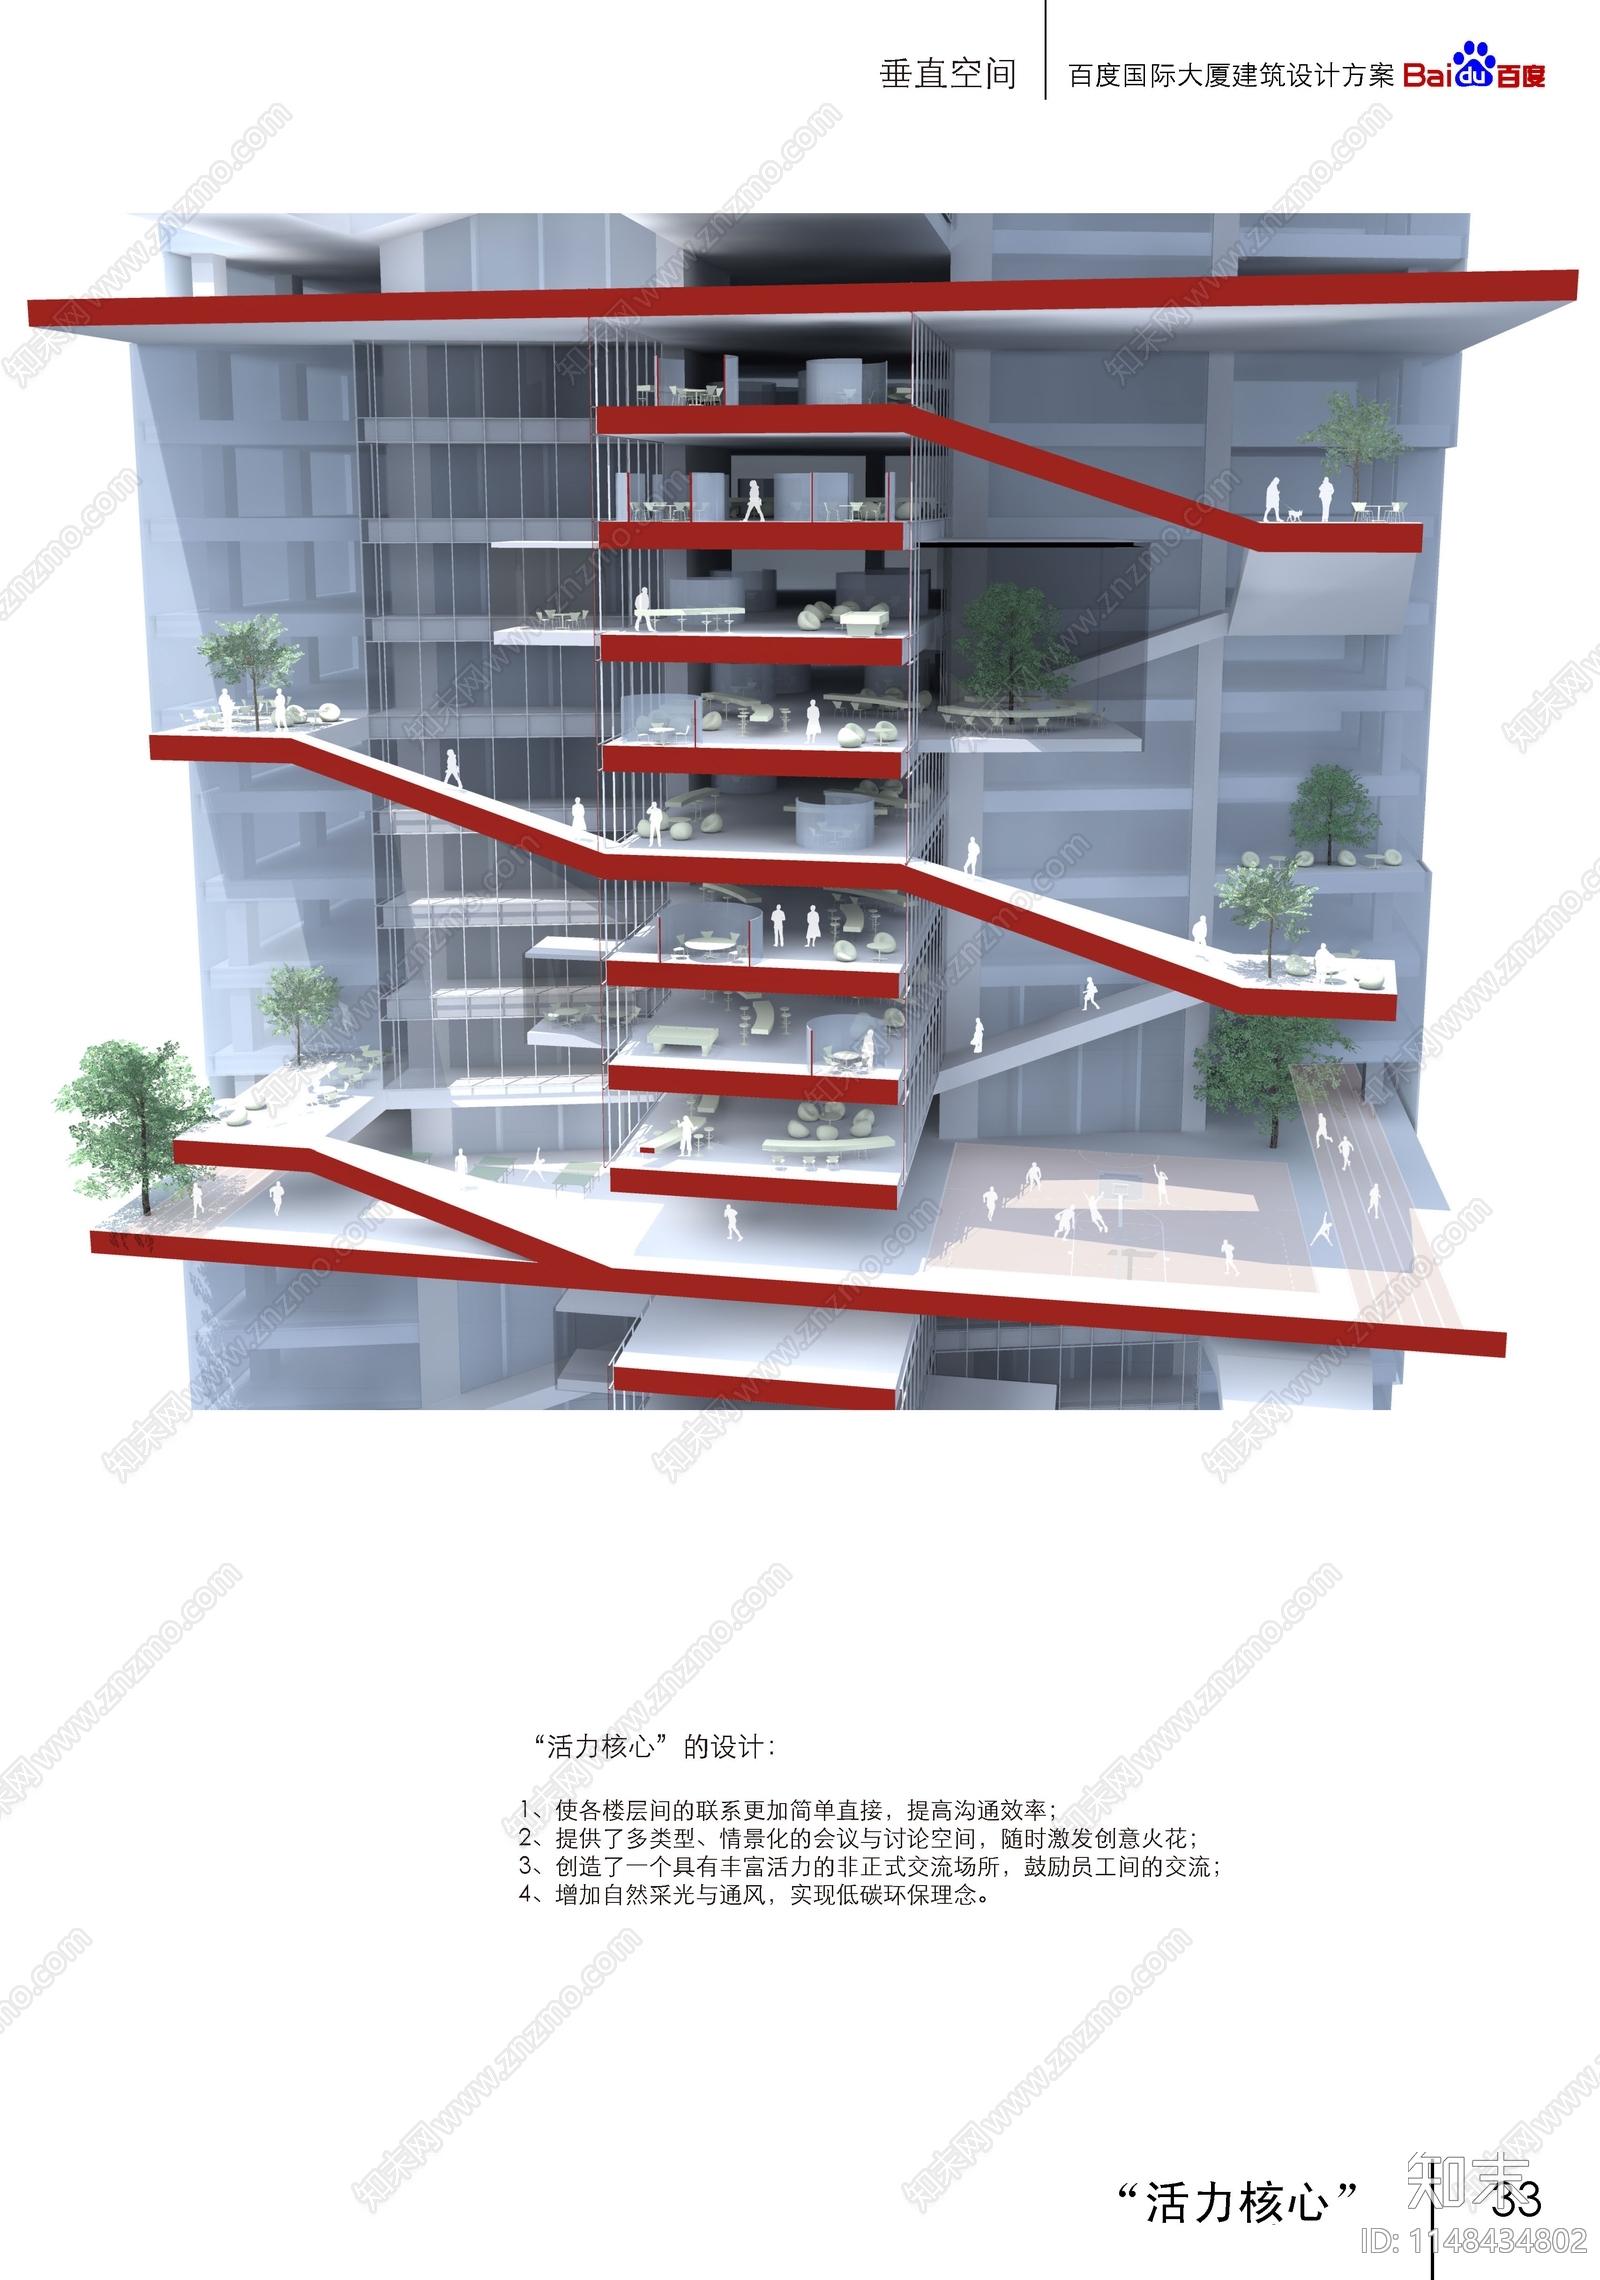 深圳百度国际大厦建筑设计方案文本下载【ID:1148434802】